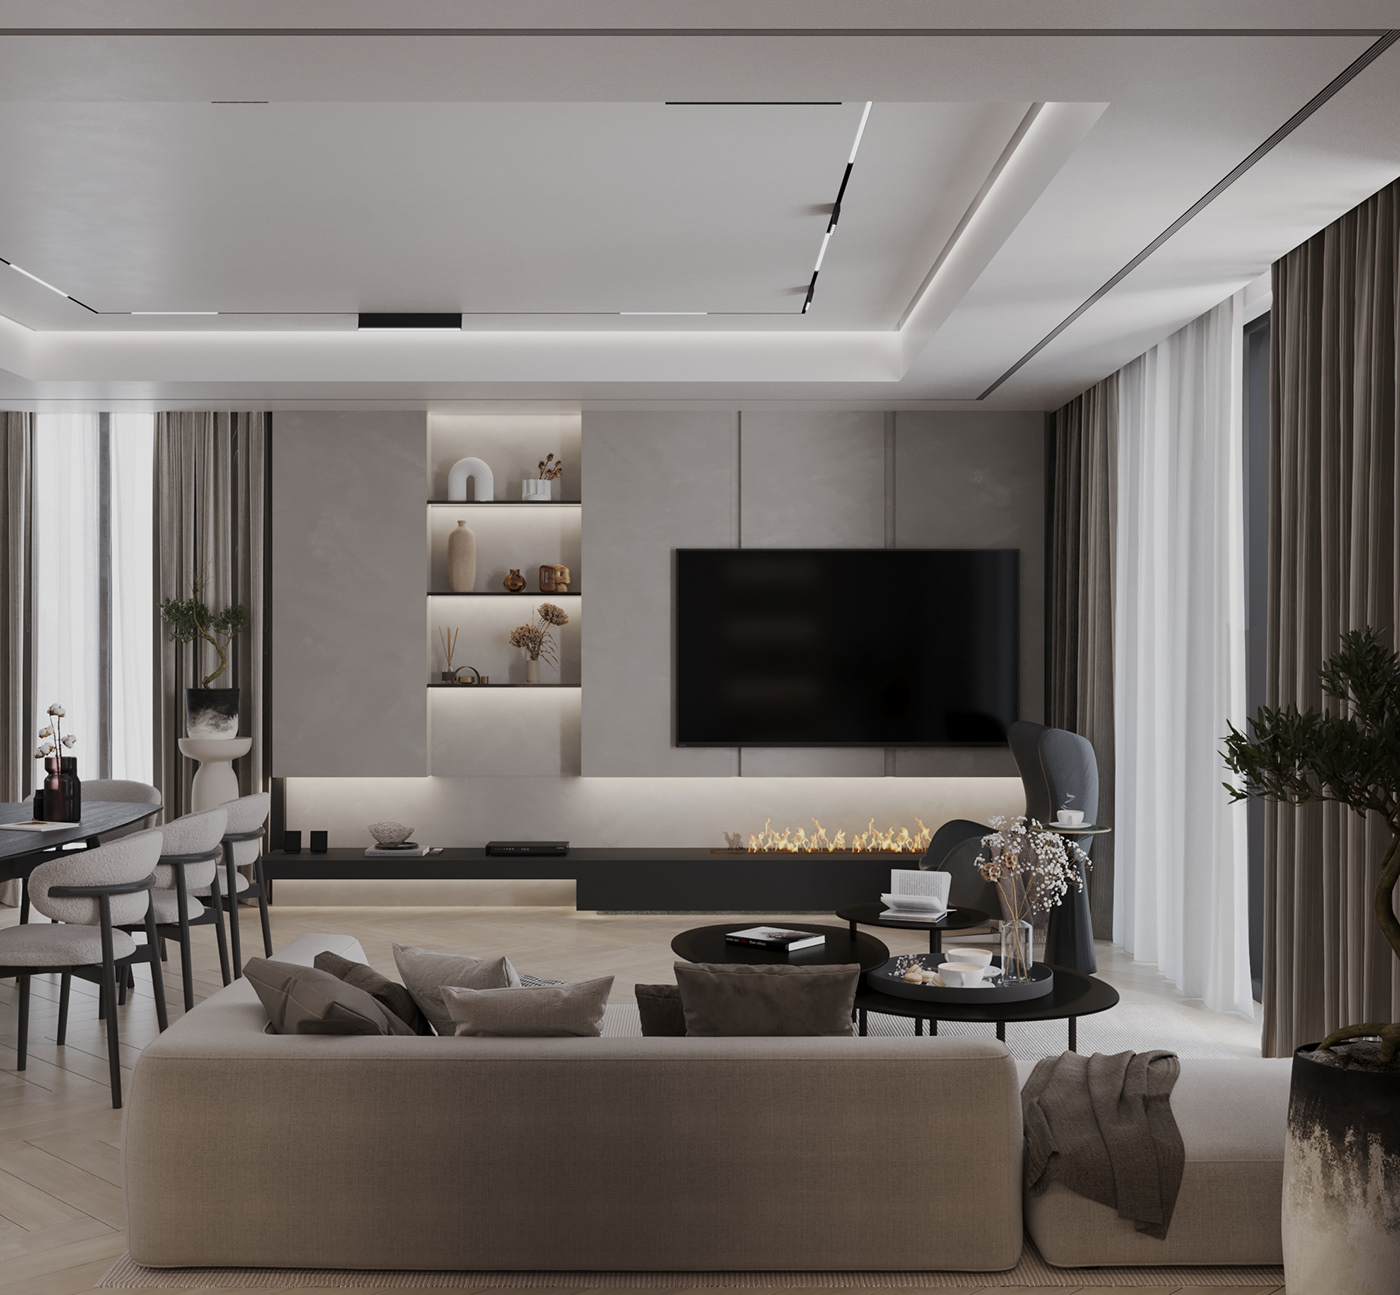 Interior design visualization architecture 3ds max interior design  corona modern Render furniture